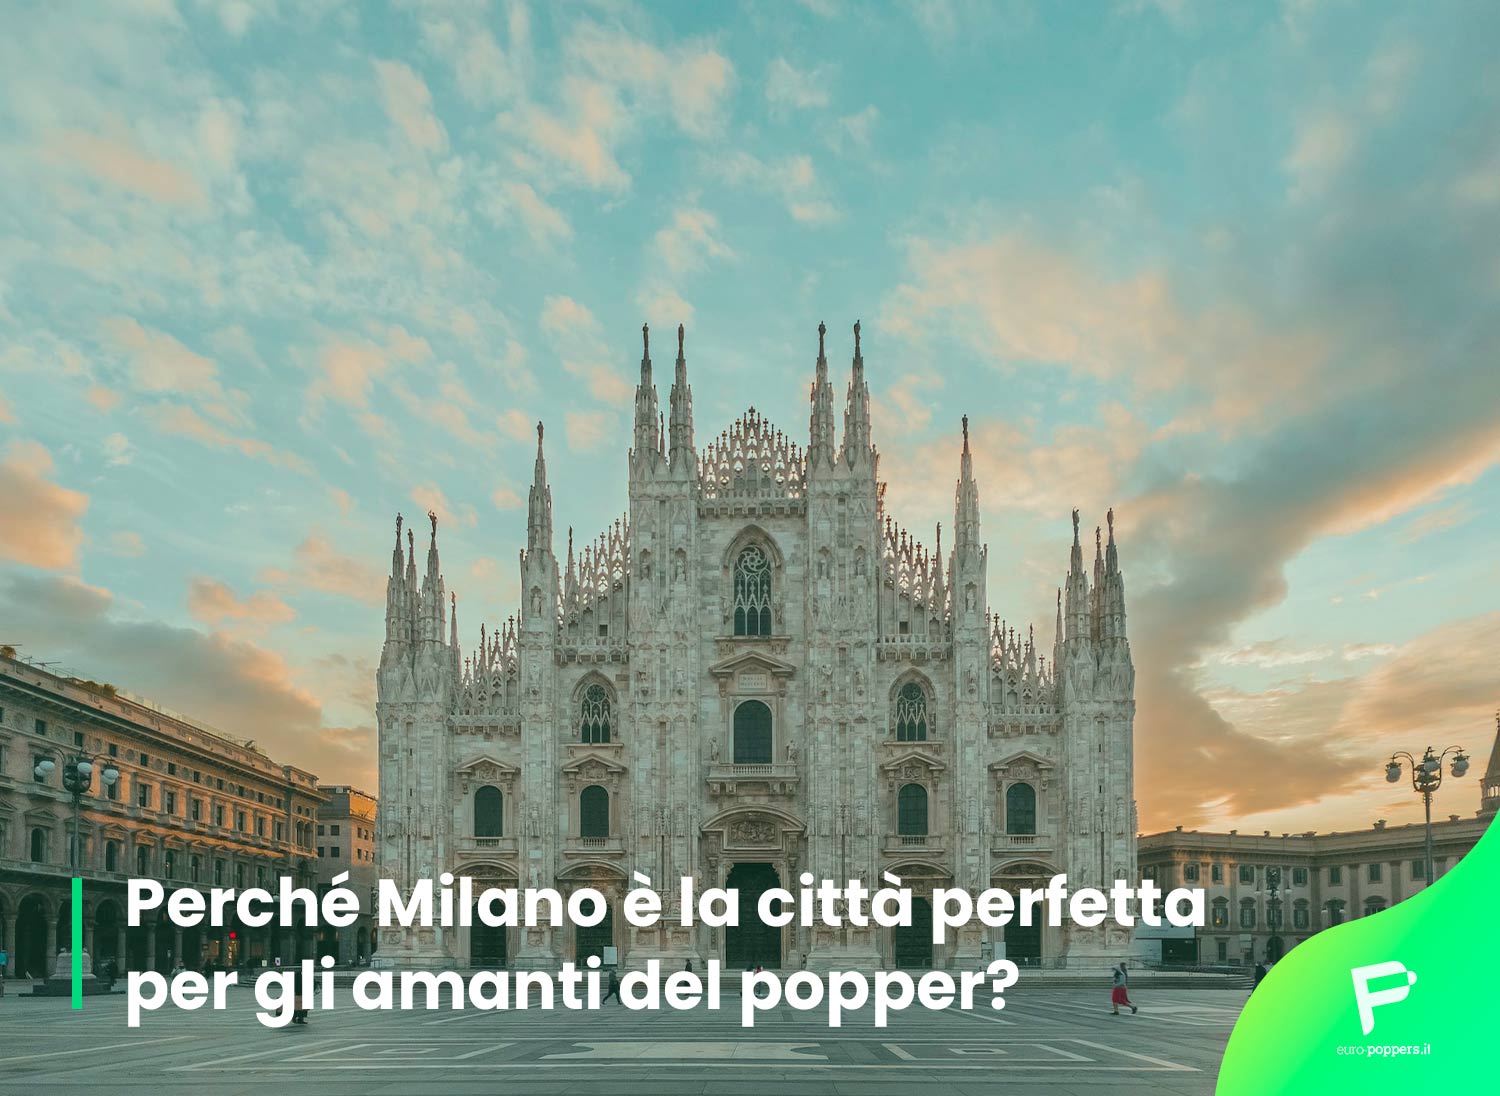 Al momento stai visualizzando Popper Milano: perché è la città perfetta per poppers?